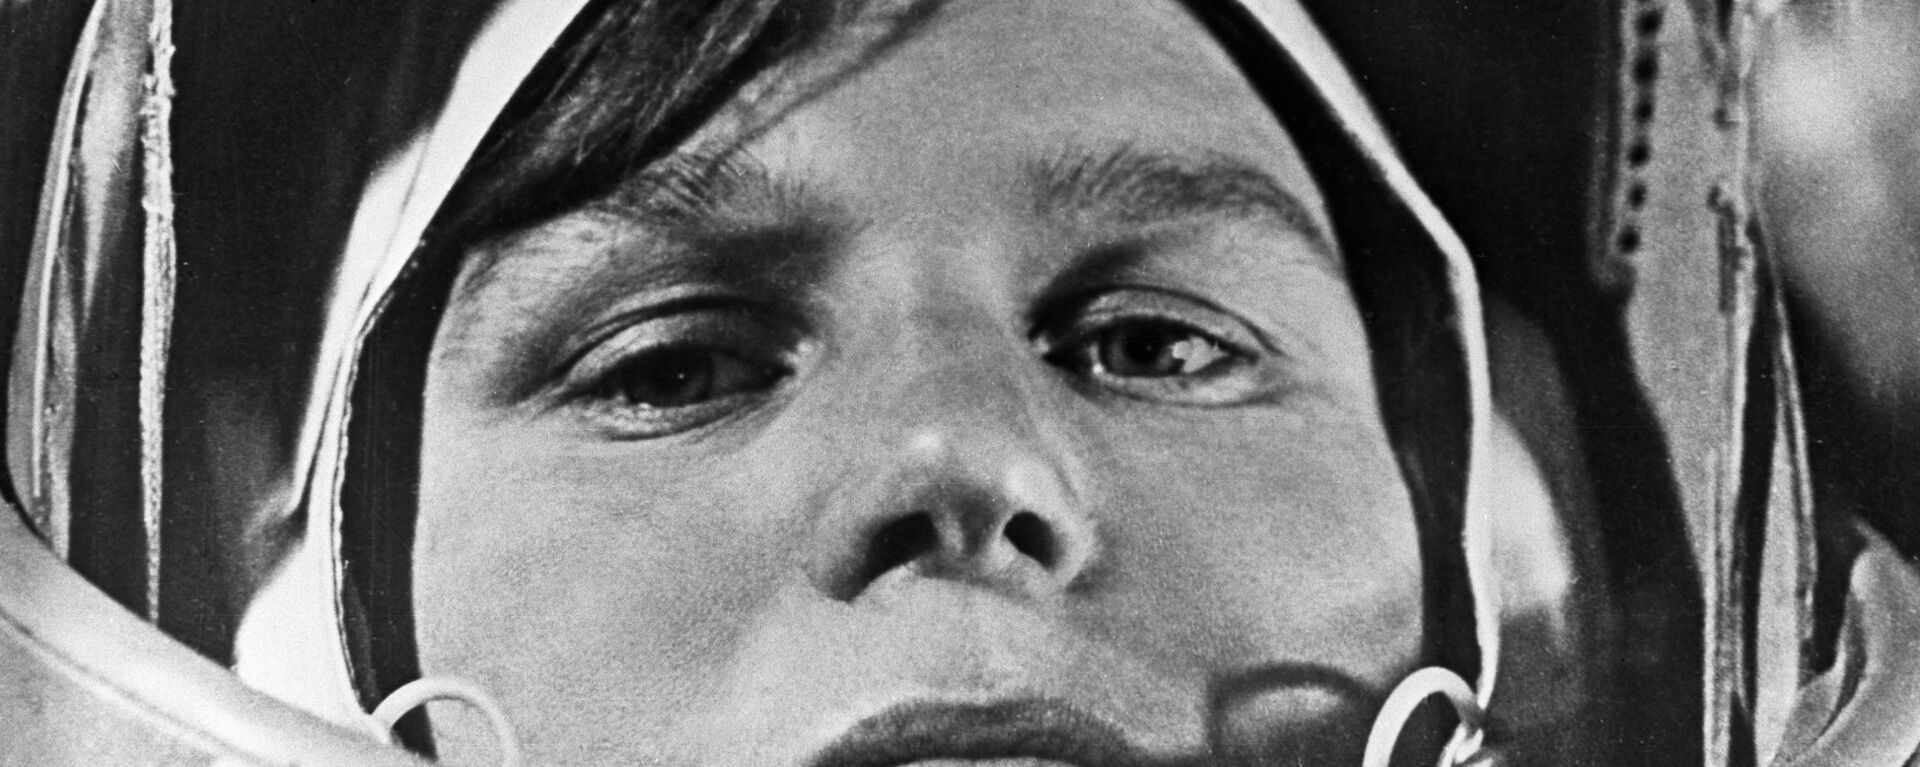 Hace 57 años una mujer cambiaba para siempre la carrera espacial - Sputnik Mundo, 1920, 16.06.2020